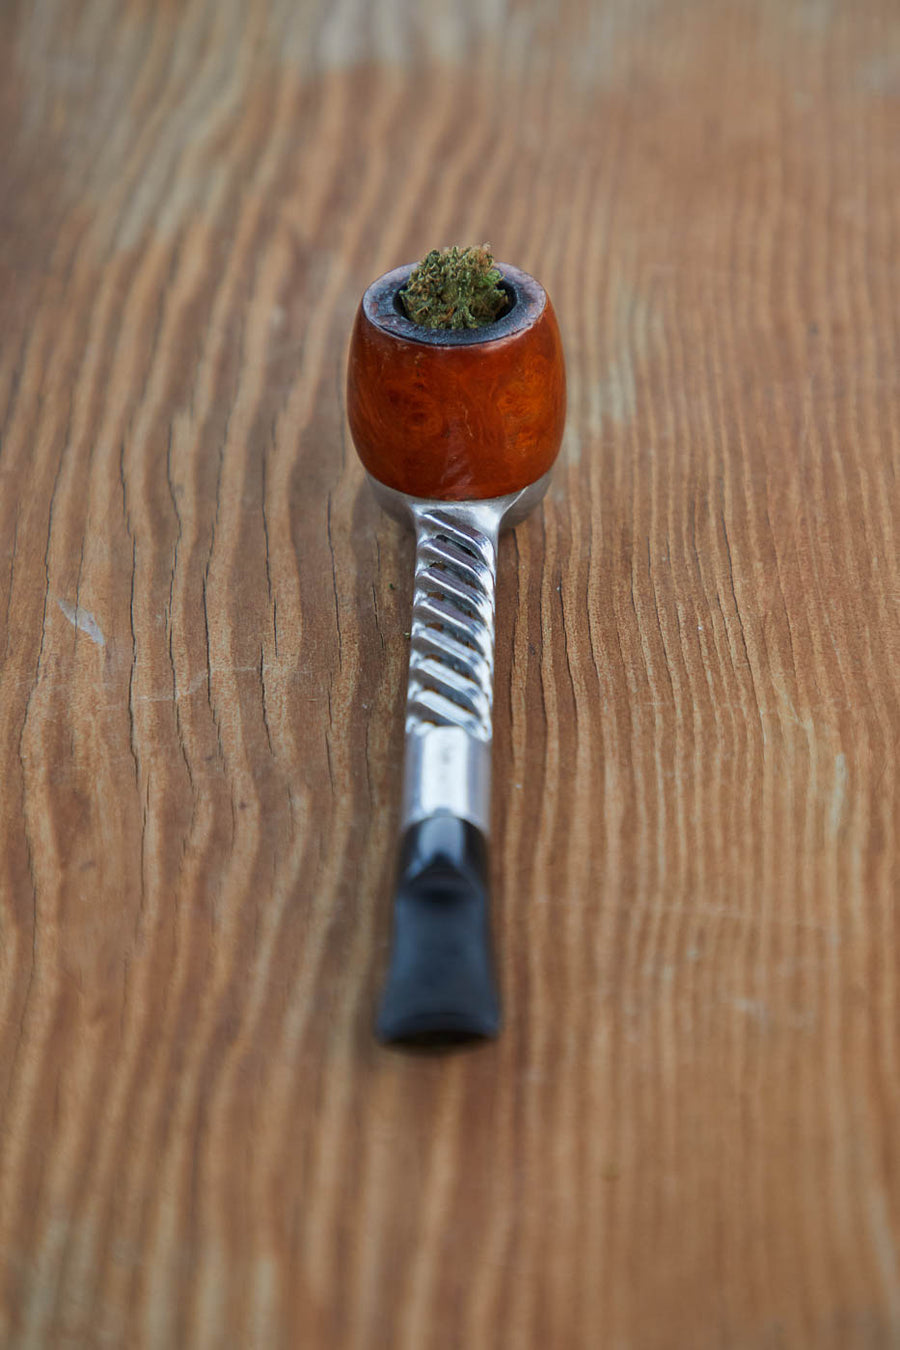 Dad Grass briar and aluminum turbo-flo smoking pipe with hemp CBD flower bottom view